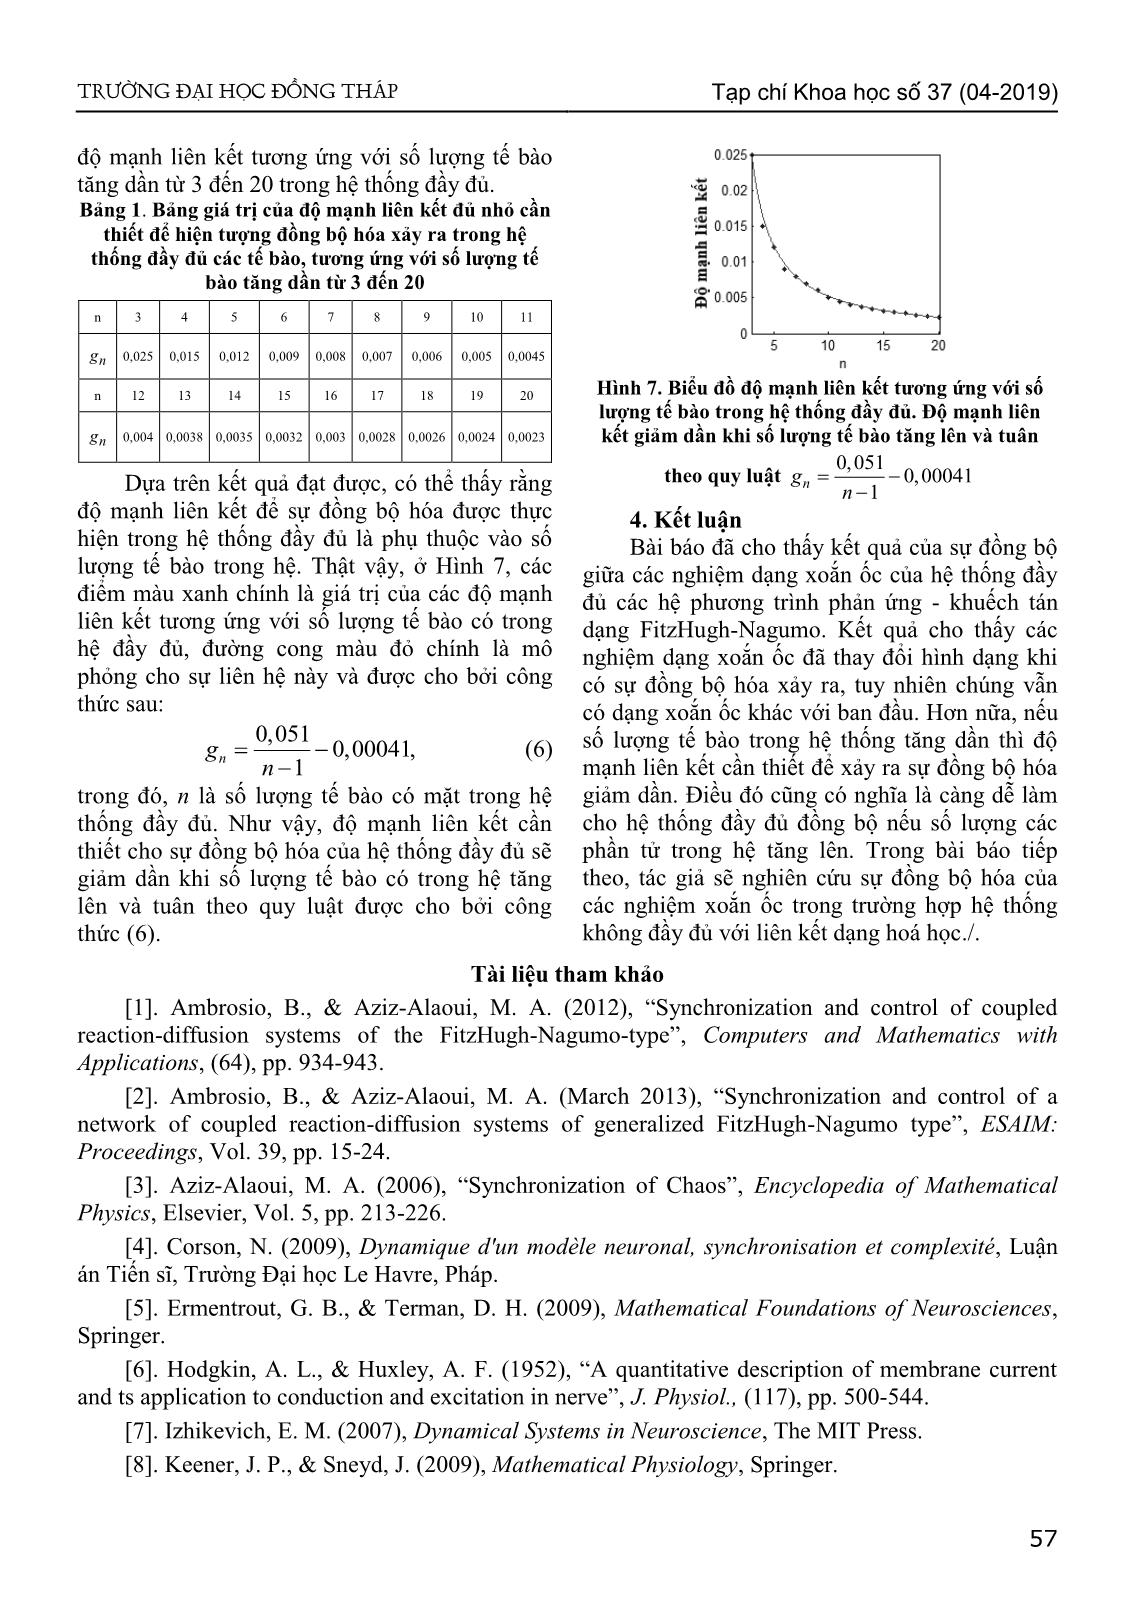 Sự đồng bộ hóa của hệ thống các phương trình phản ứng khuếch tán Fitzhugh-Nagumo có nghiệm dạng xoắn ốc trang 4